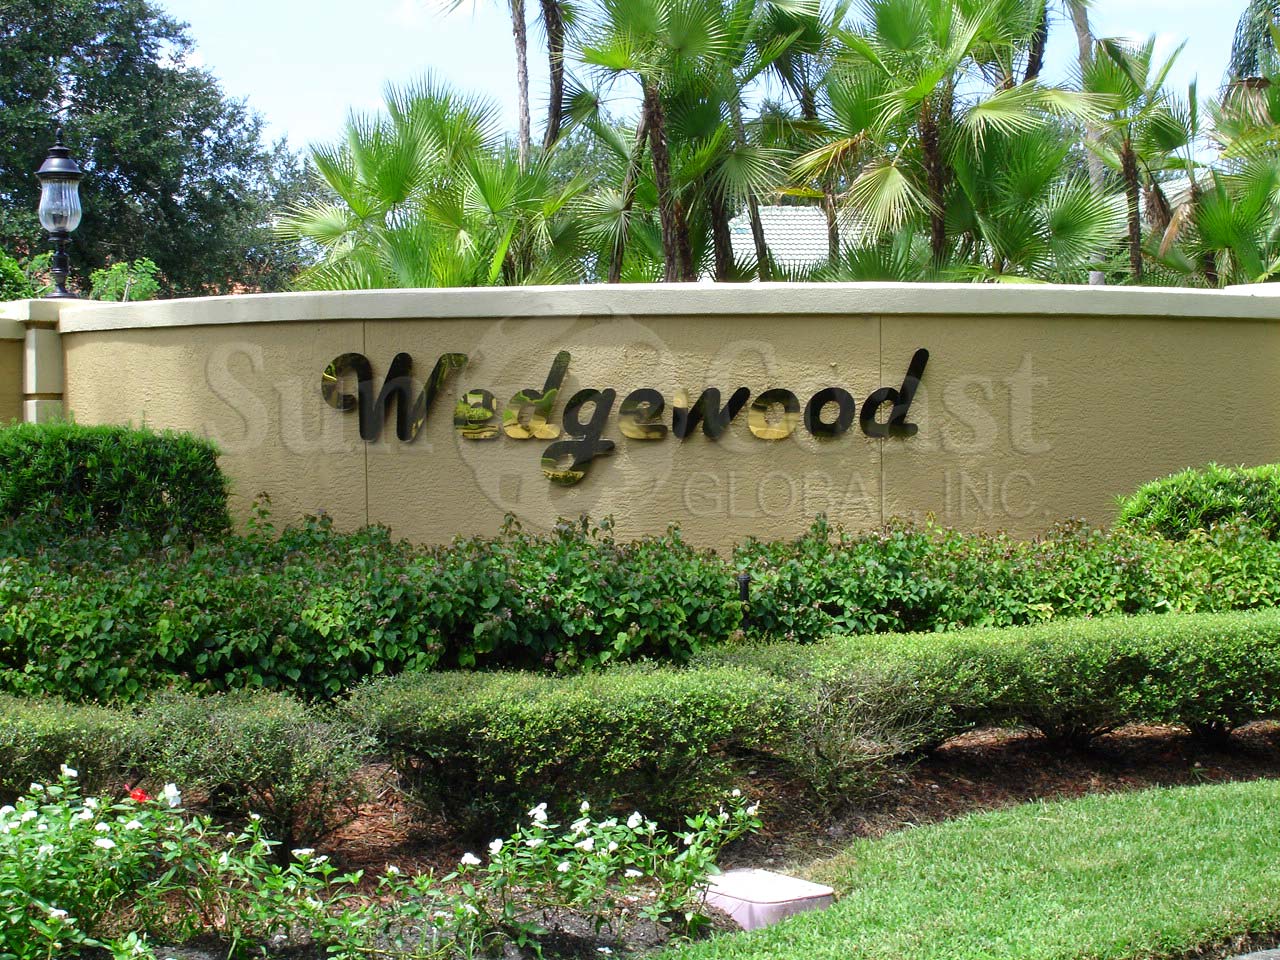 Wedgewood signage